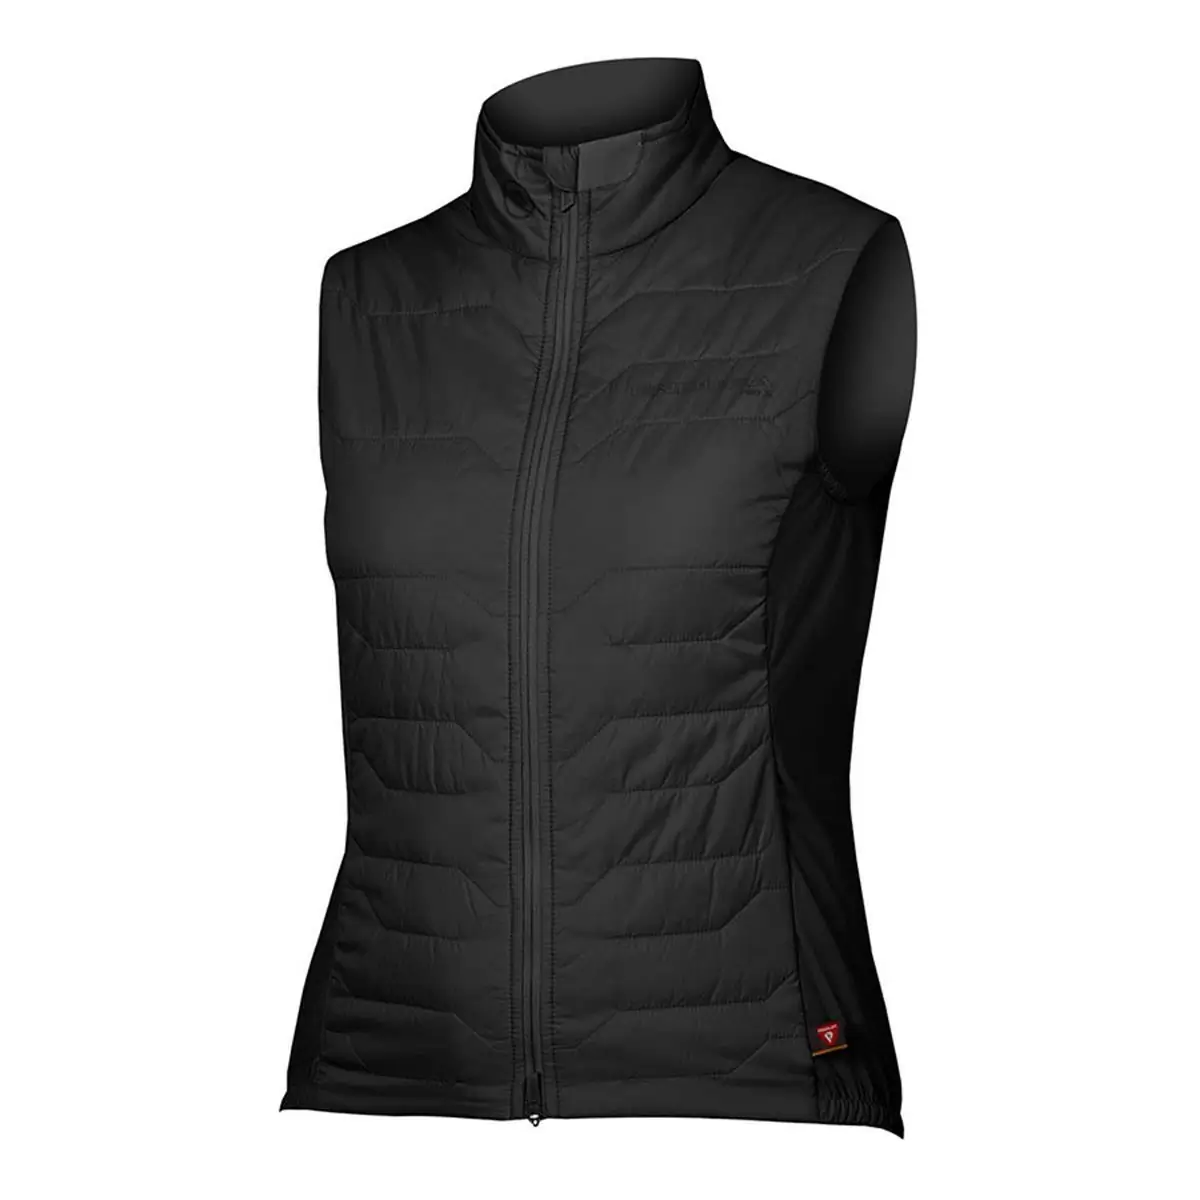 Pro SL PrimaLoft Rain/Windproof Vest Women's Vest Black size M - image